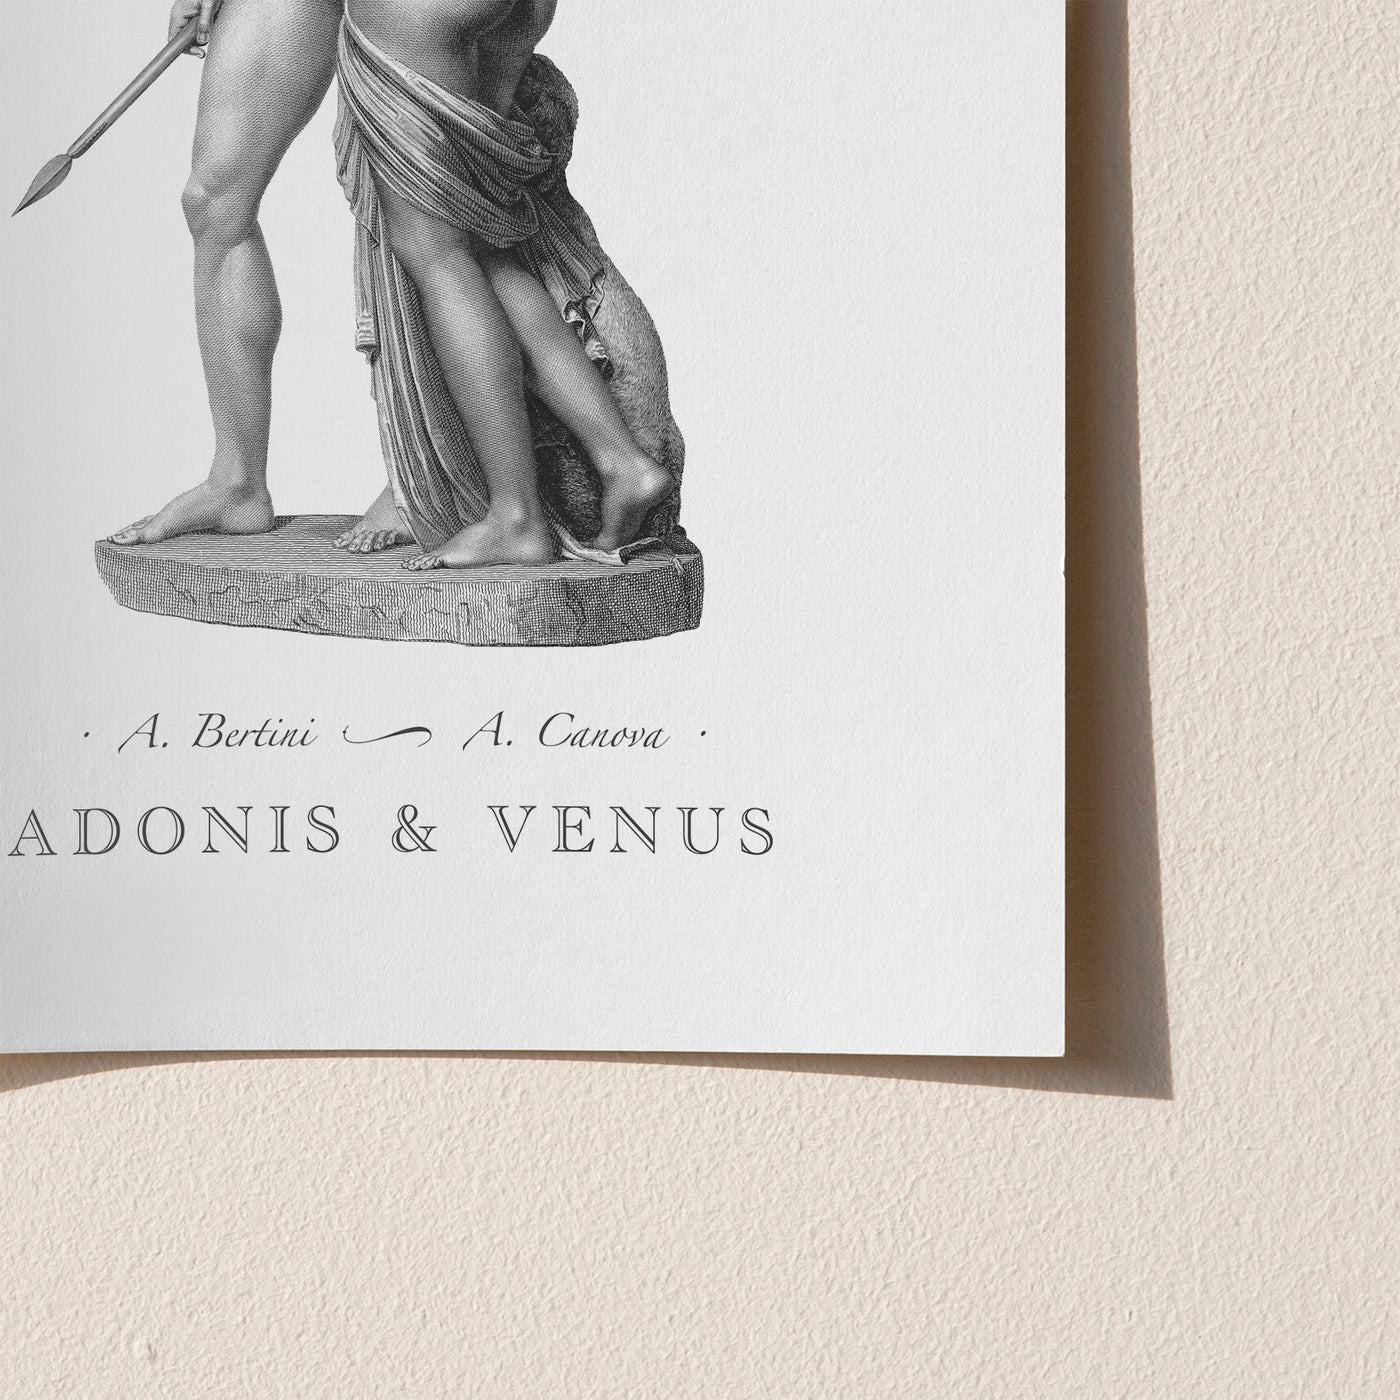 Adonis and Venus engraving